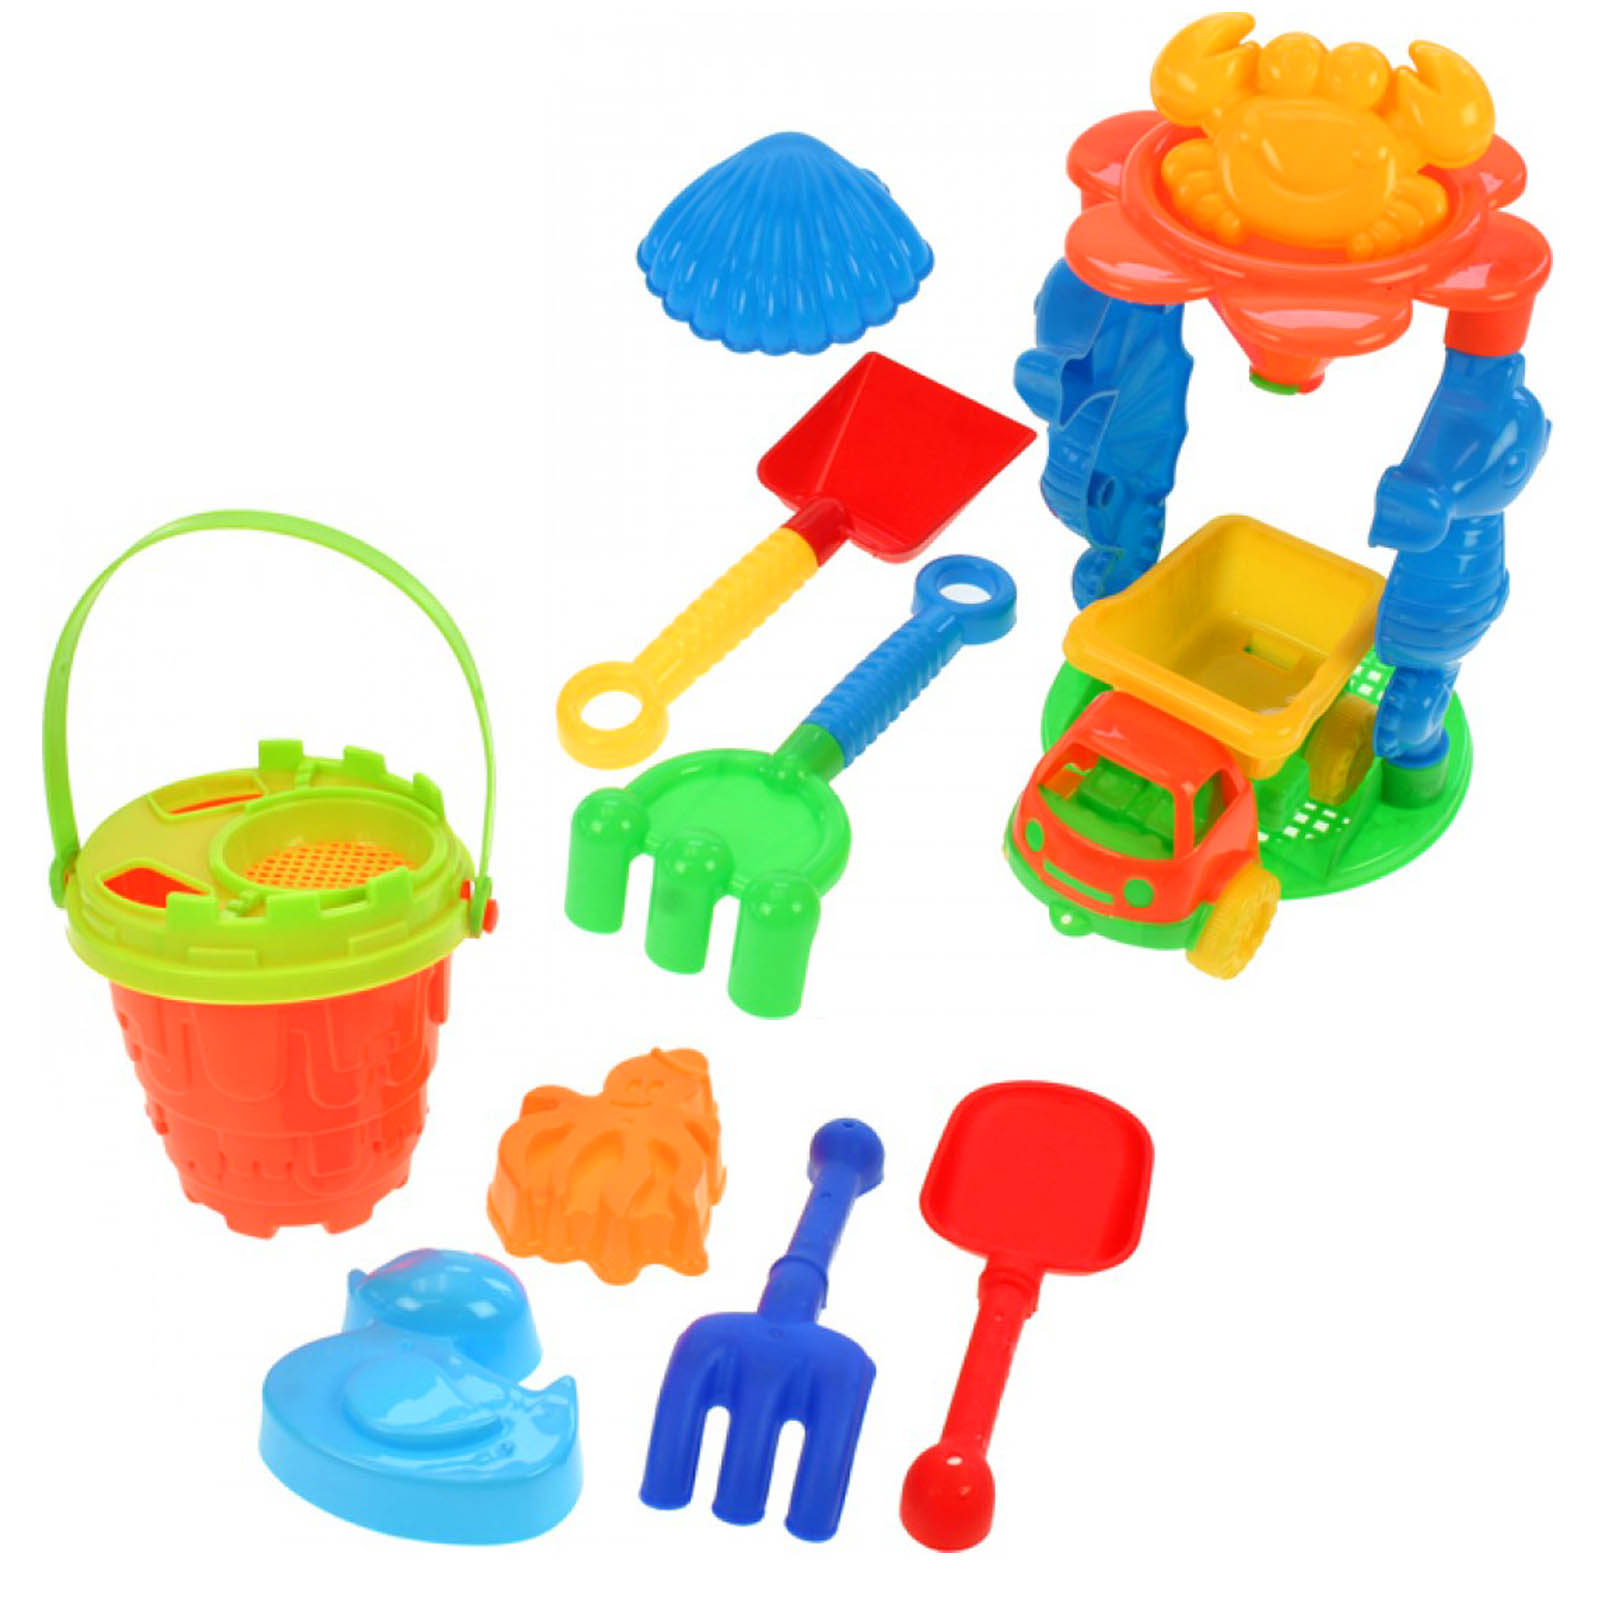 Sandspielzeug Piraten mit Eimer 6-teilig mehrfarbig 18 cm Sandkasten Spielzeug 